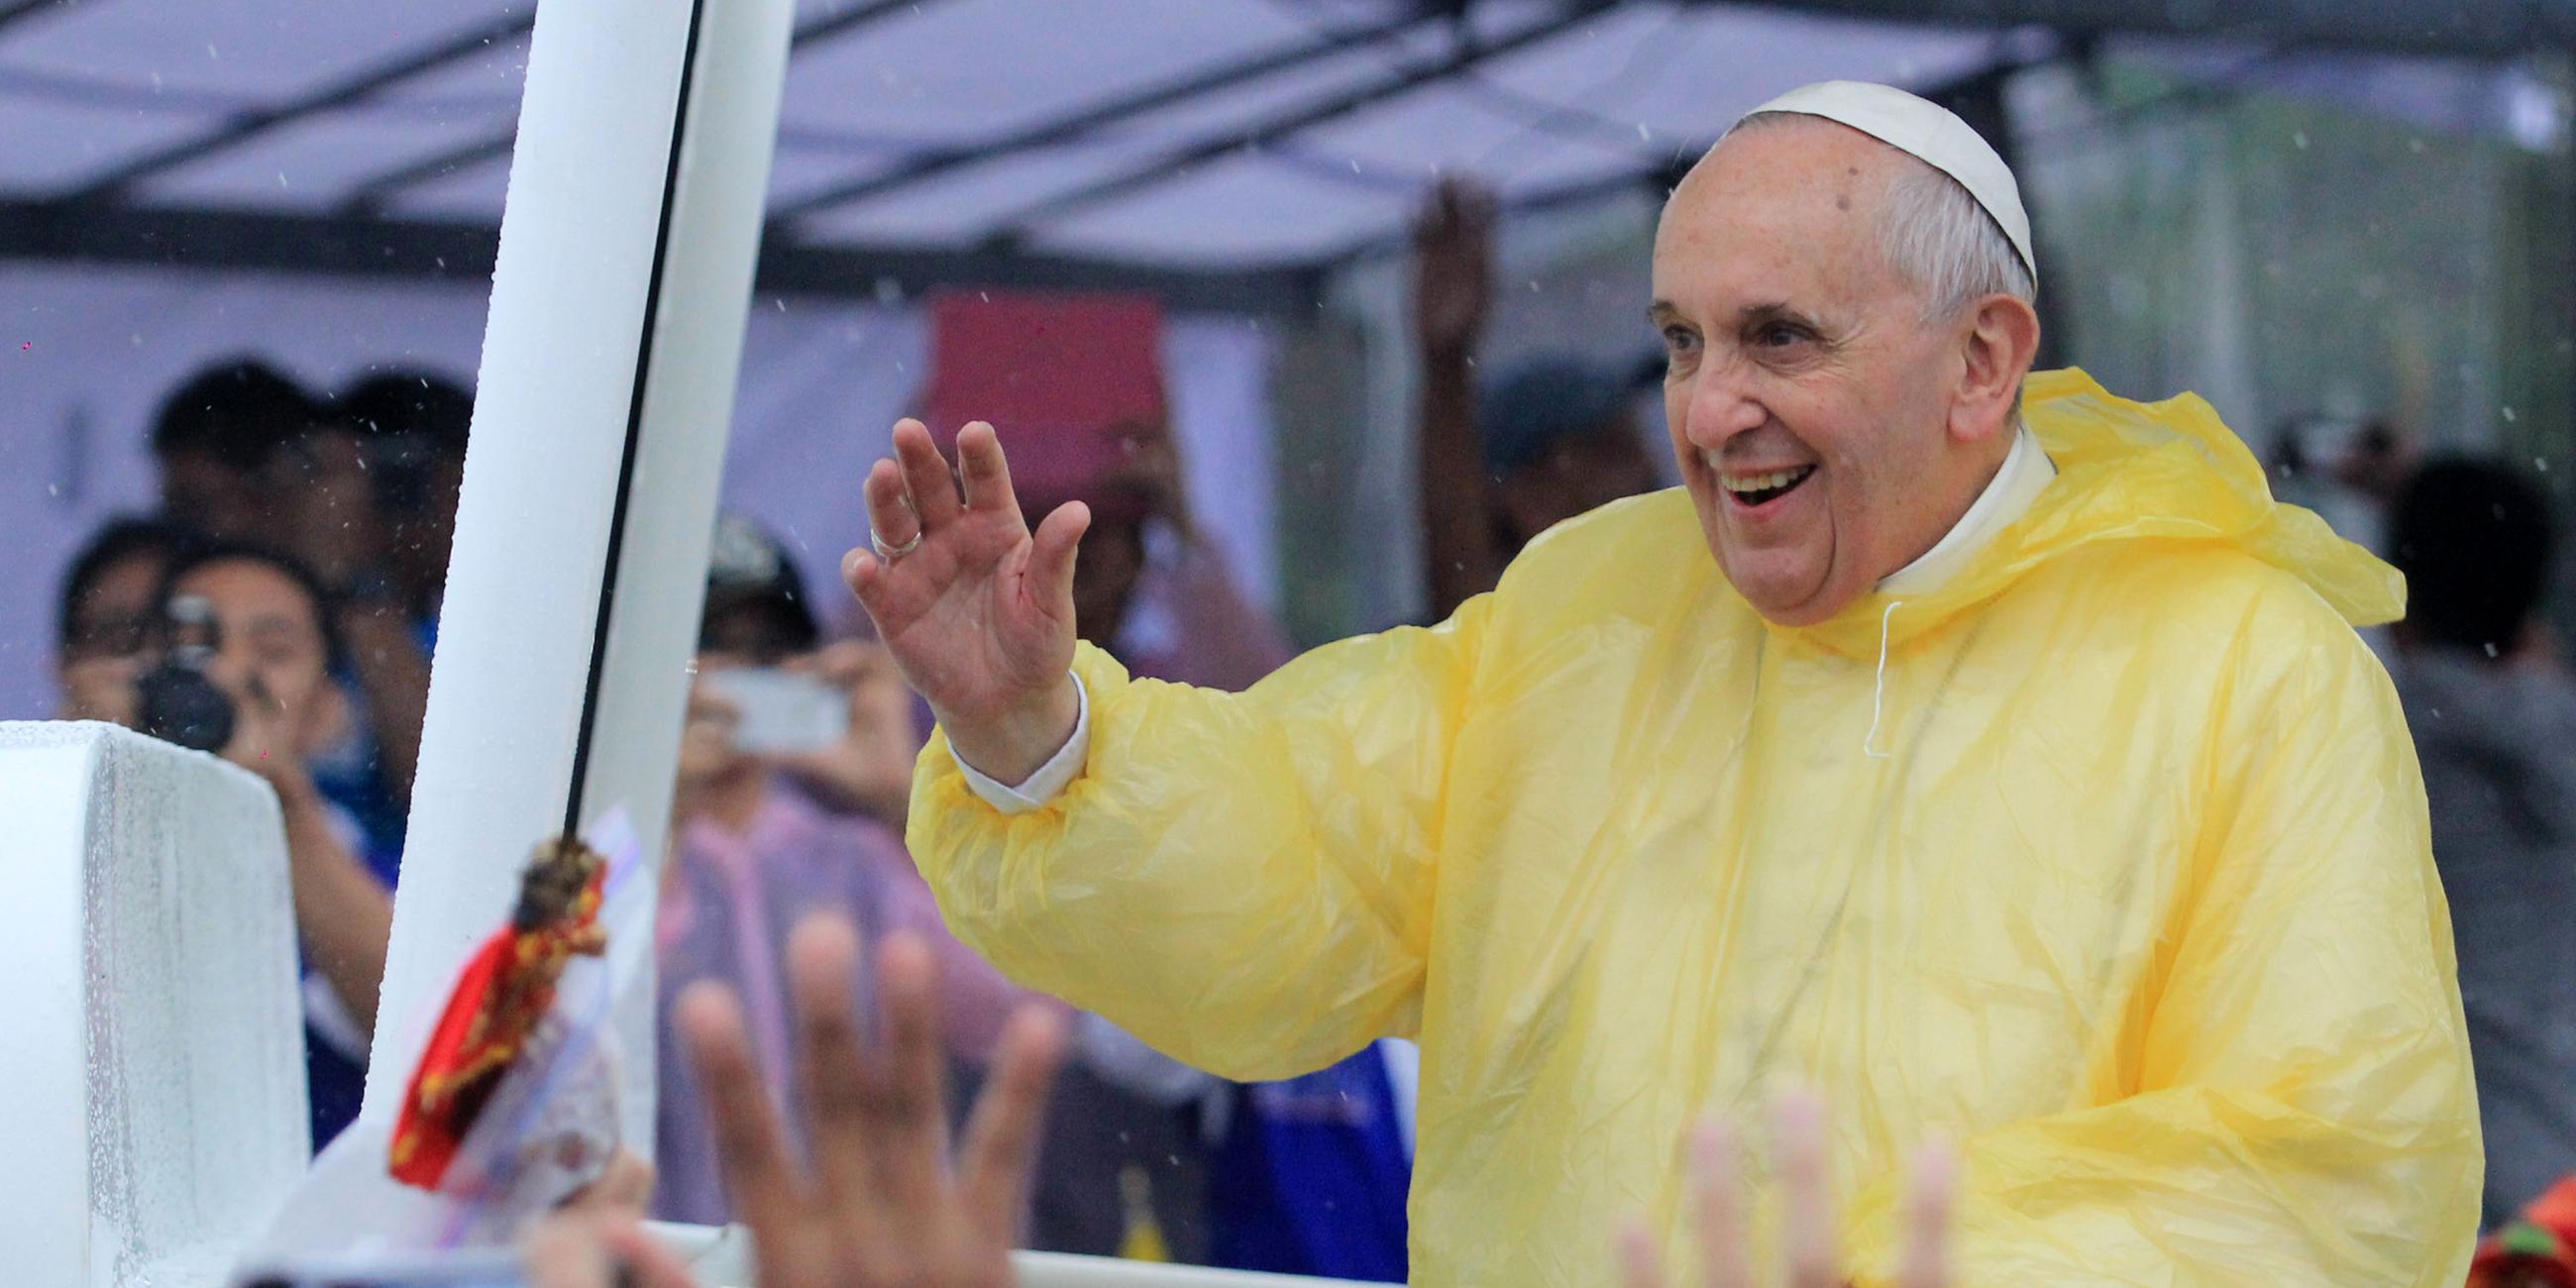  Papst Franziskus steht lachend im Papamobil und winkt Menschen zu.